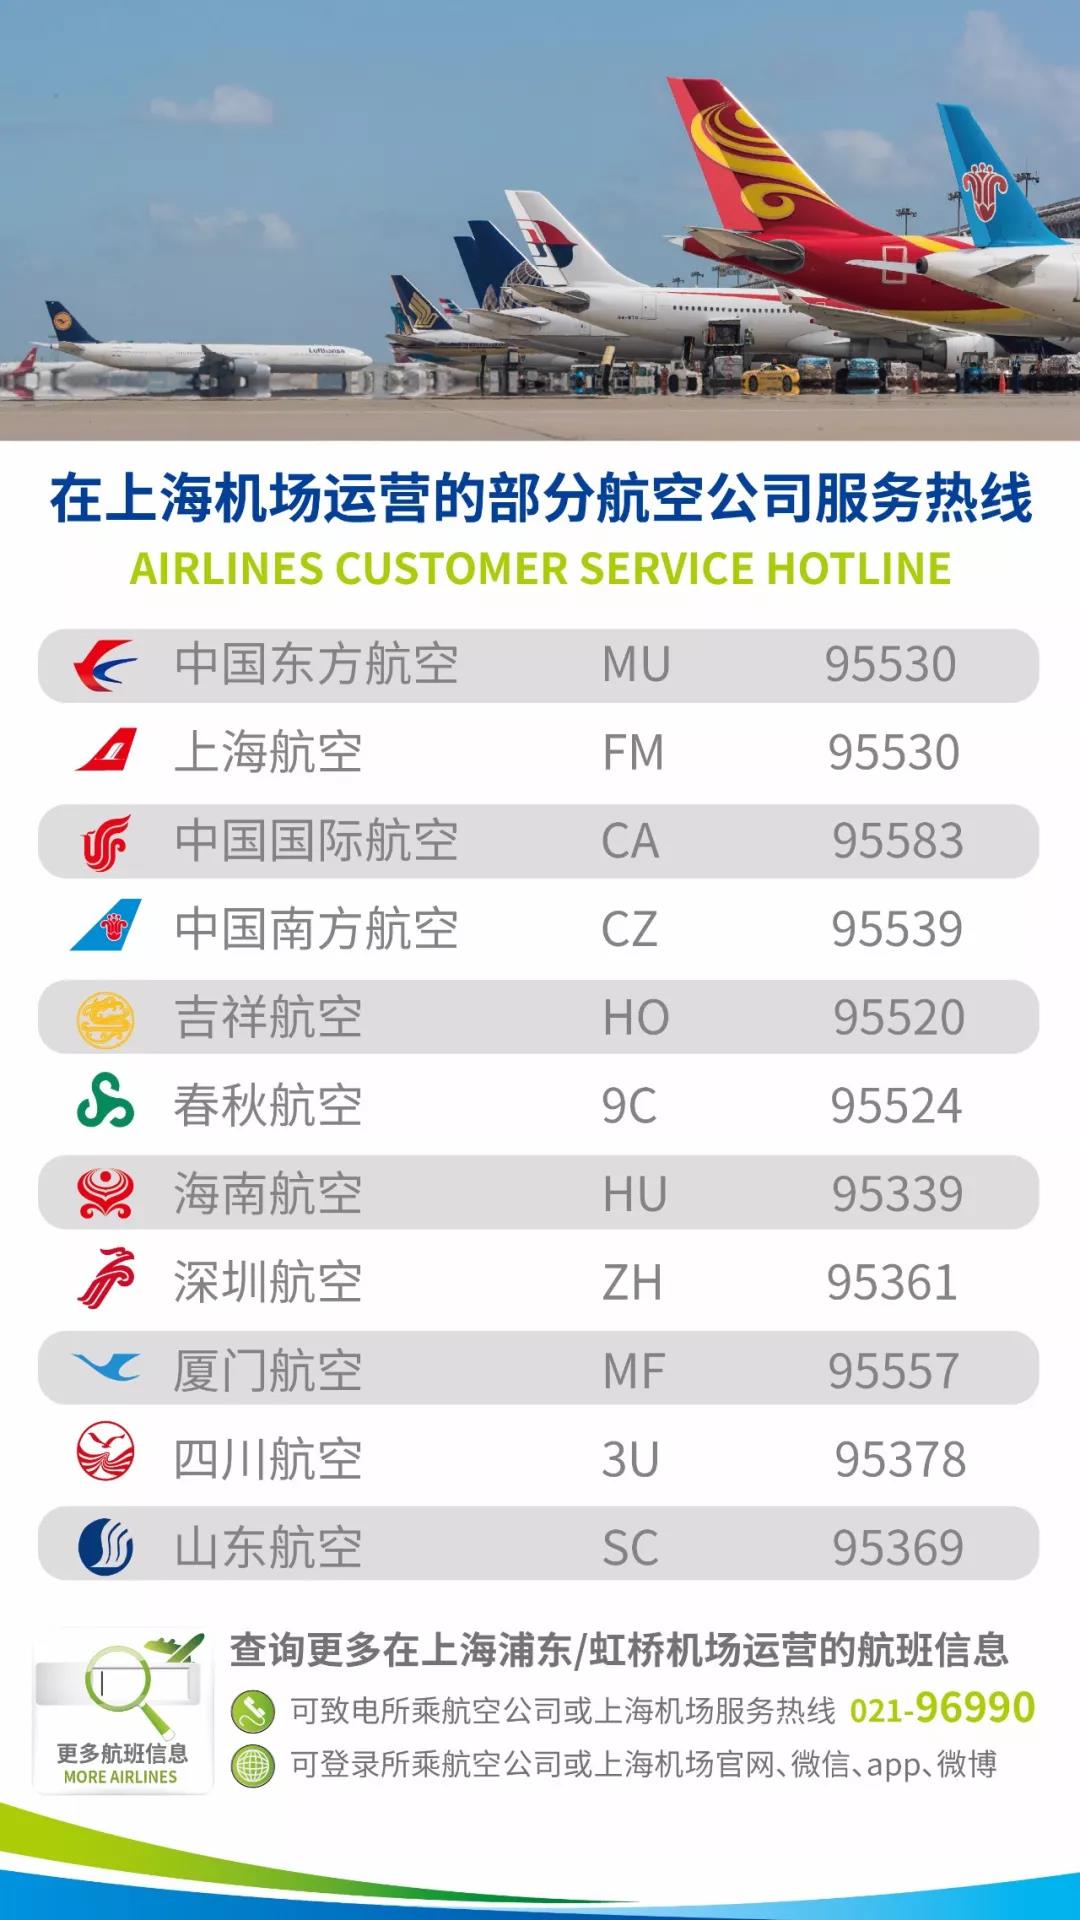 7月25日全天,上海浦东机场和虹桥机场,所有客运进出港航班取消,请旅客